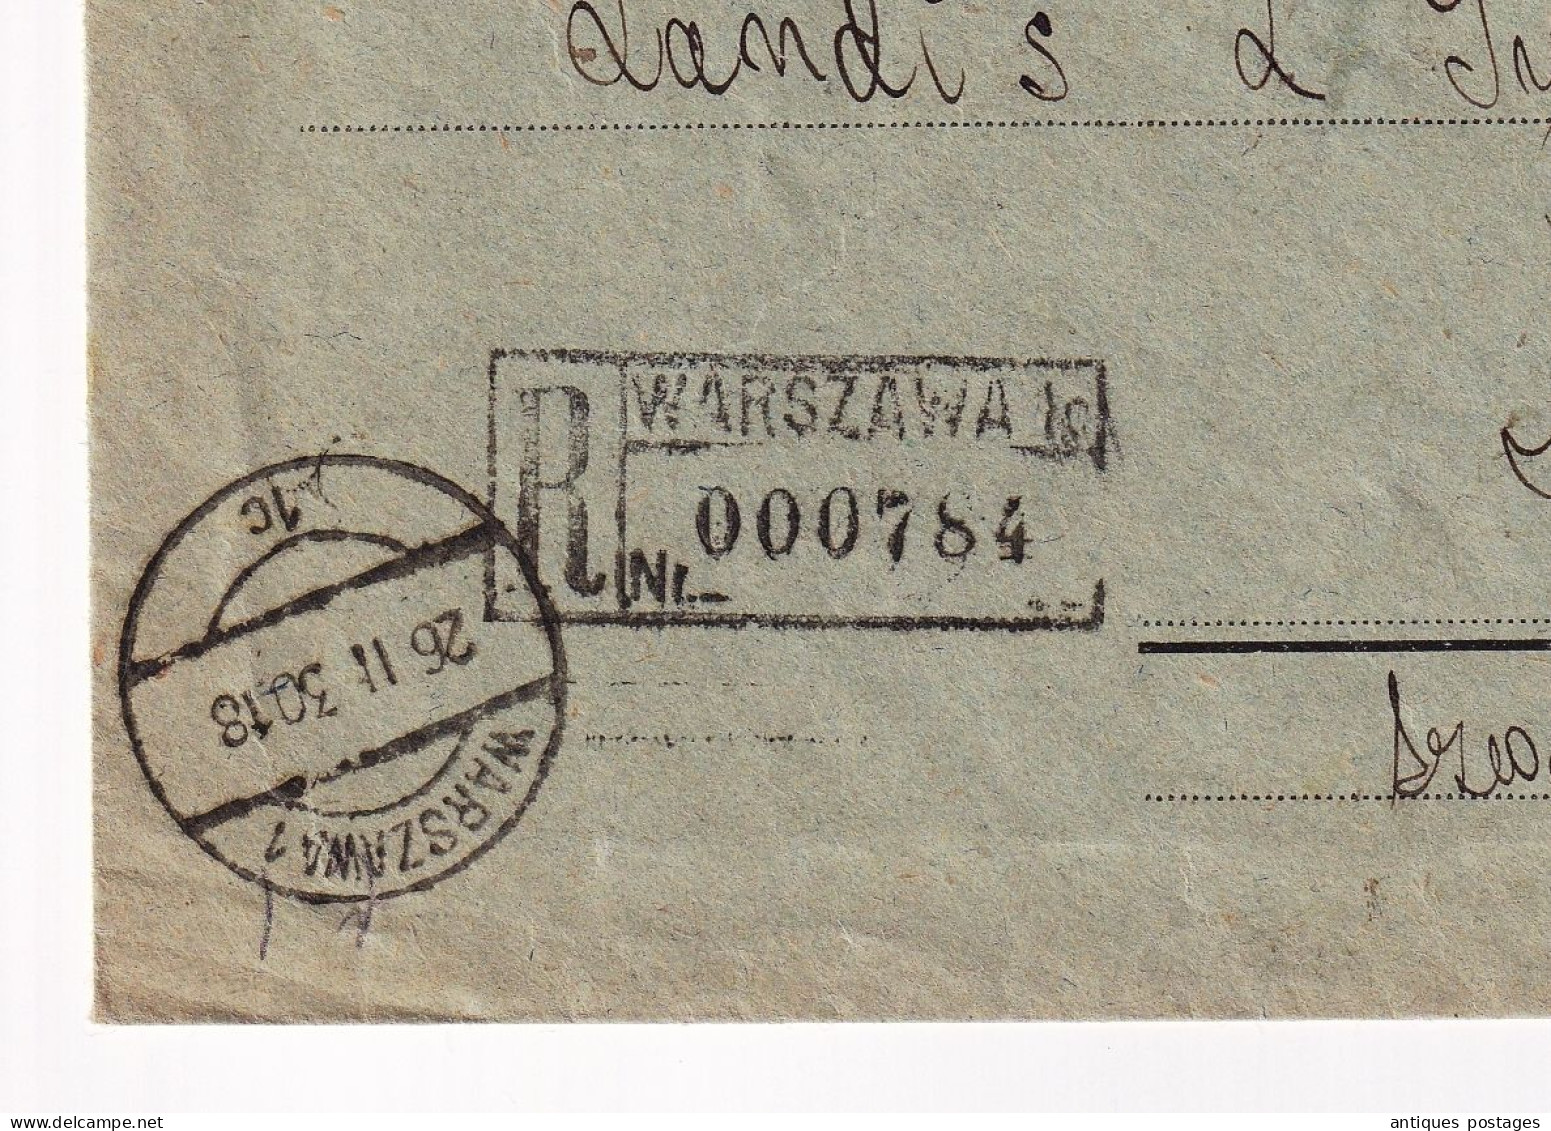 Lettre 1930 Pologne Poland Varsovie Warszawa  Bank Zachodni Zug Zoug Suisse Banque Finance Polska - Brieven En Documenten